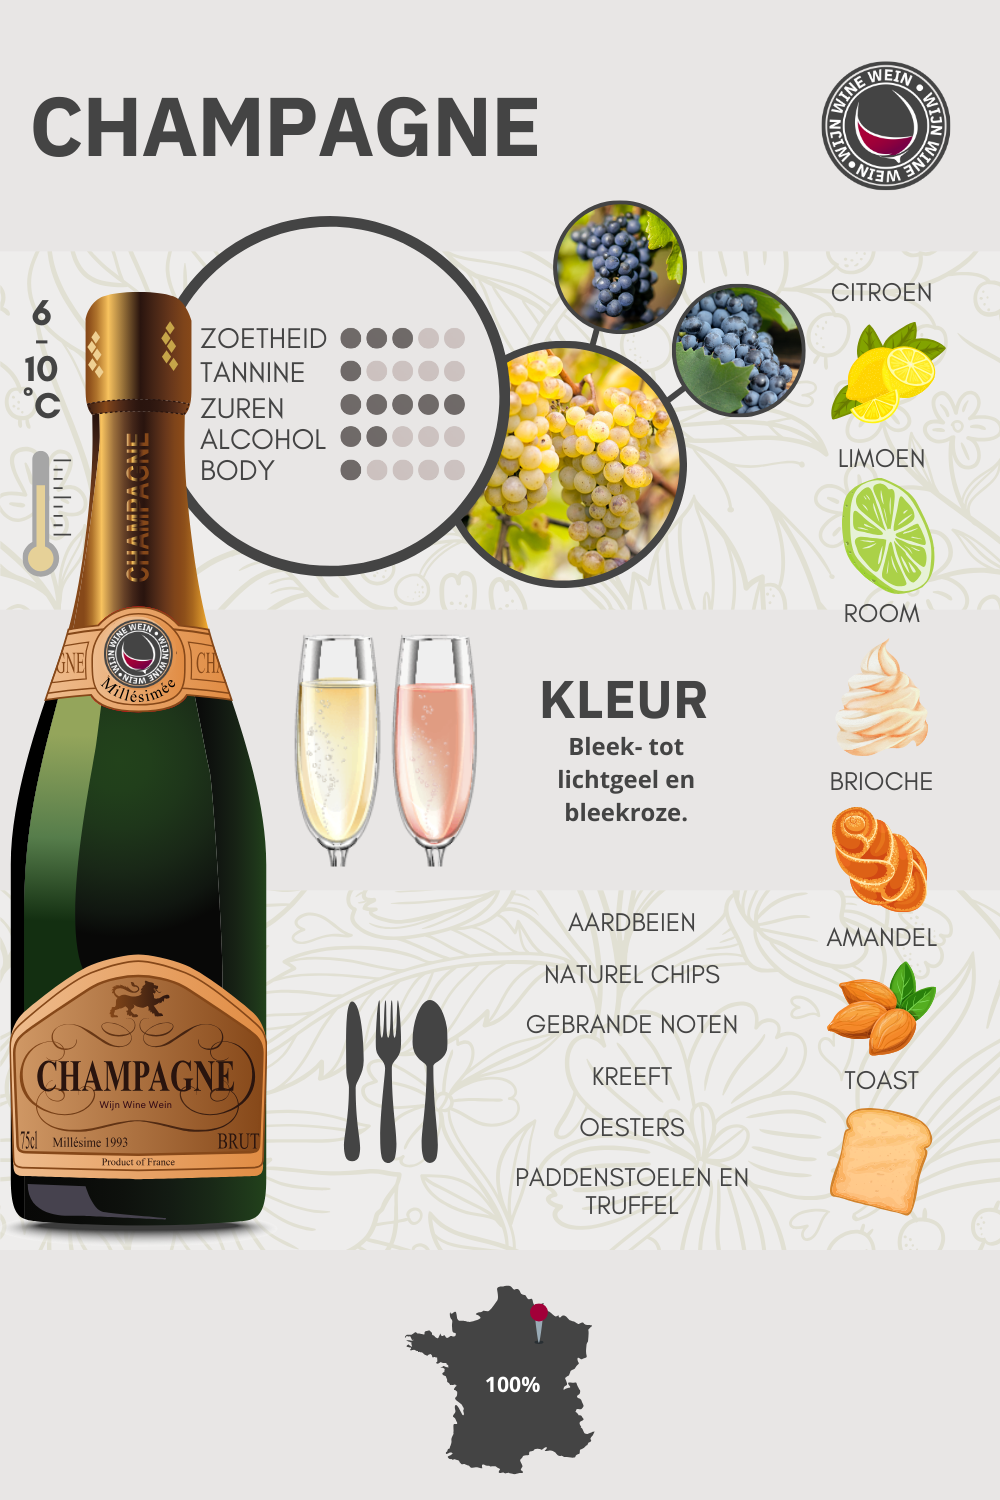 Champagne Wijn Guide